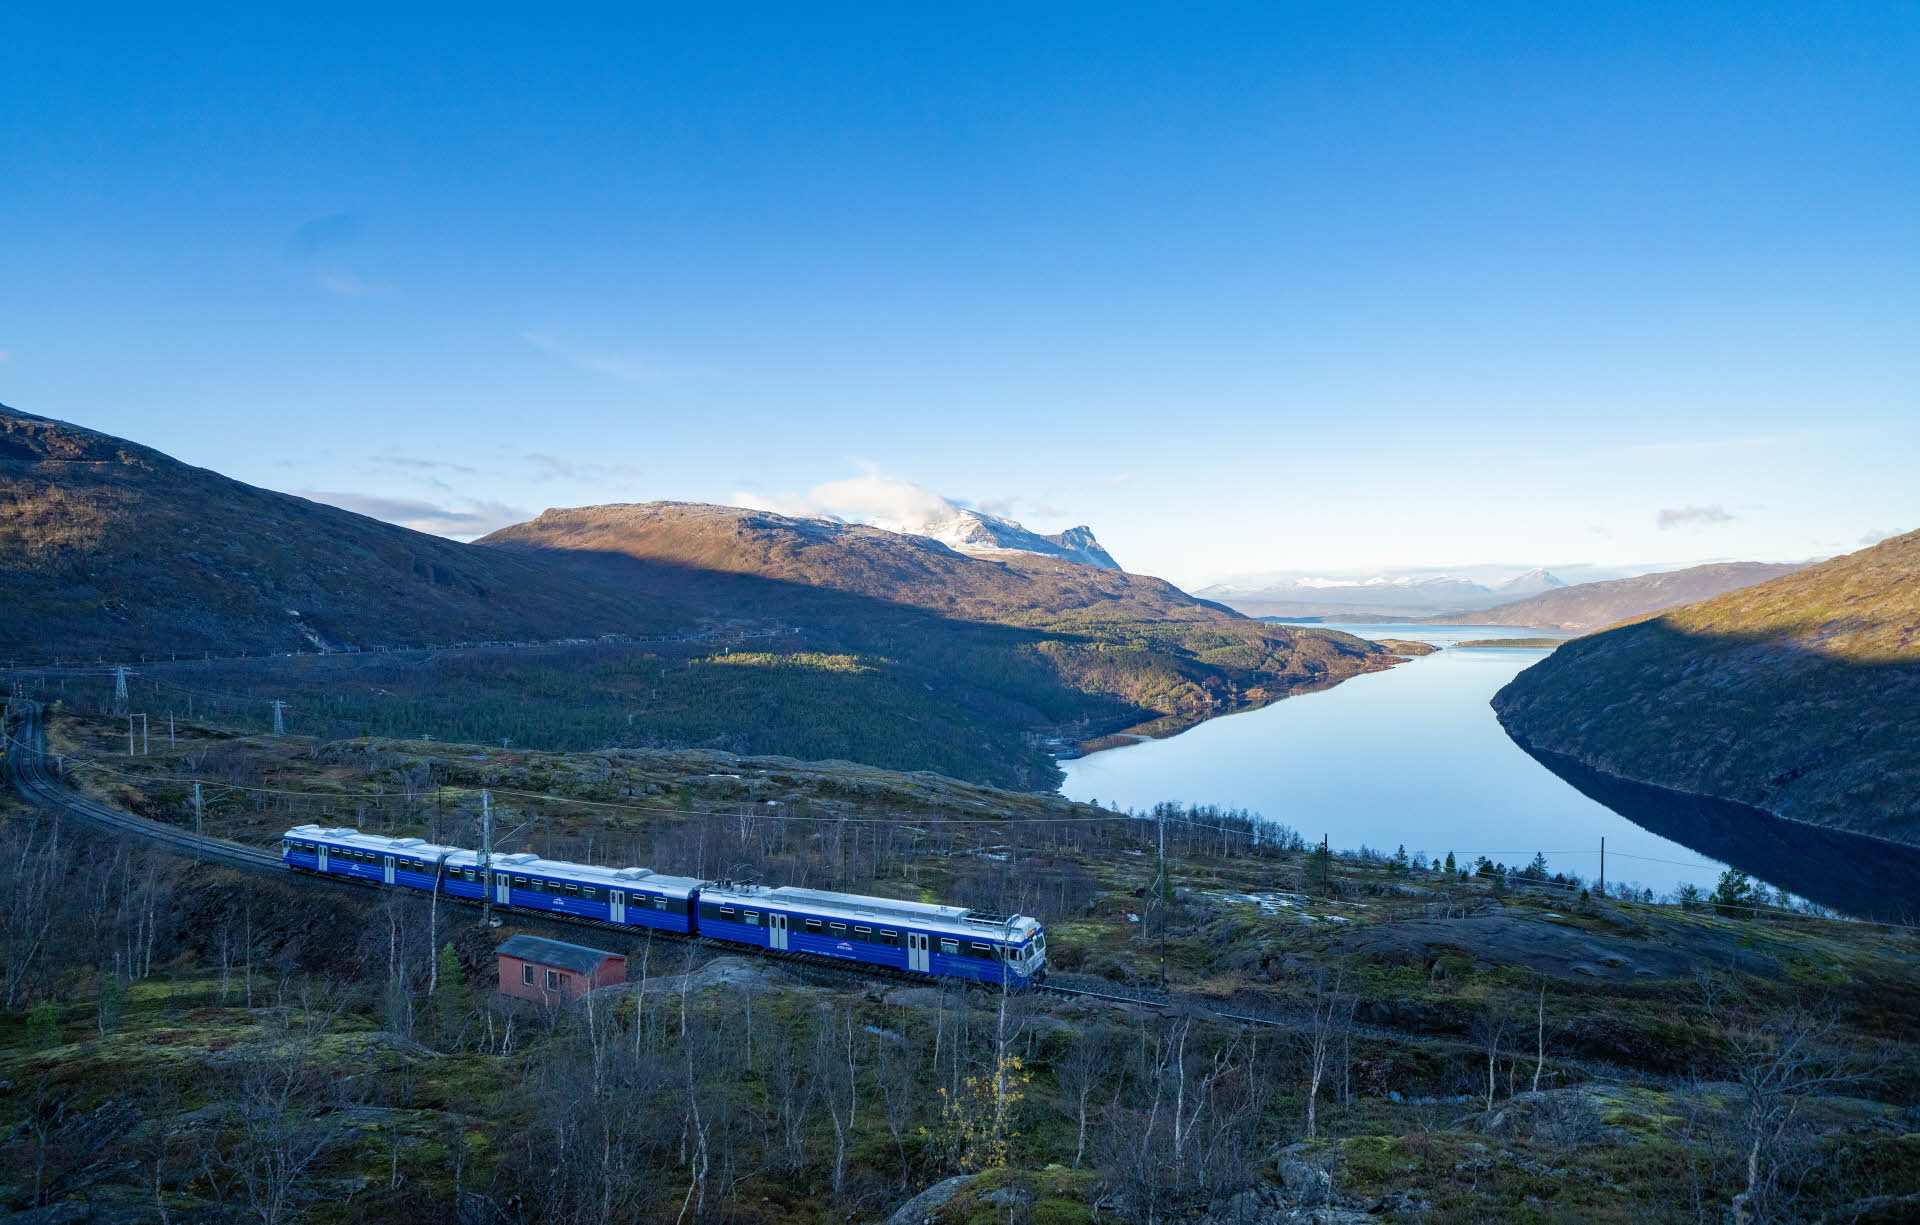 ロンバクフィヨルドの上を走るアークティック トレインの青い列車の遠景